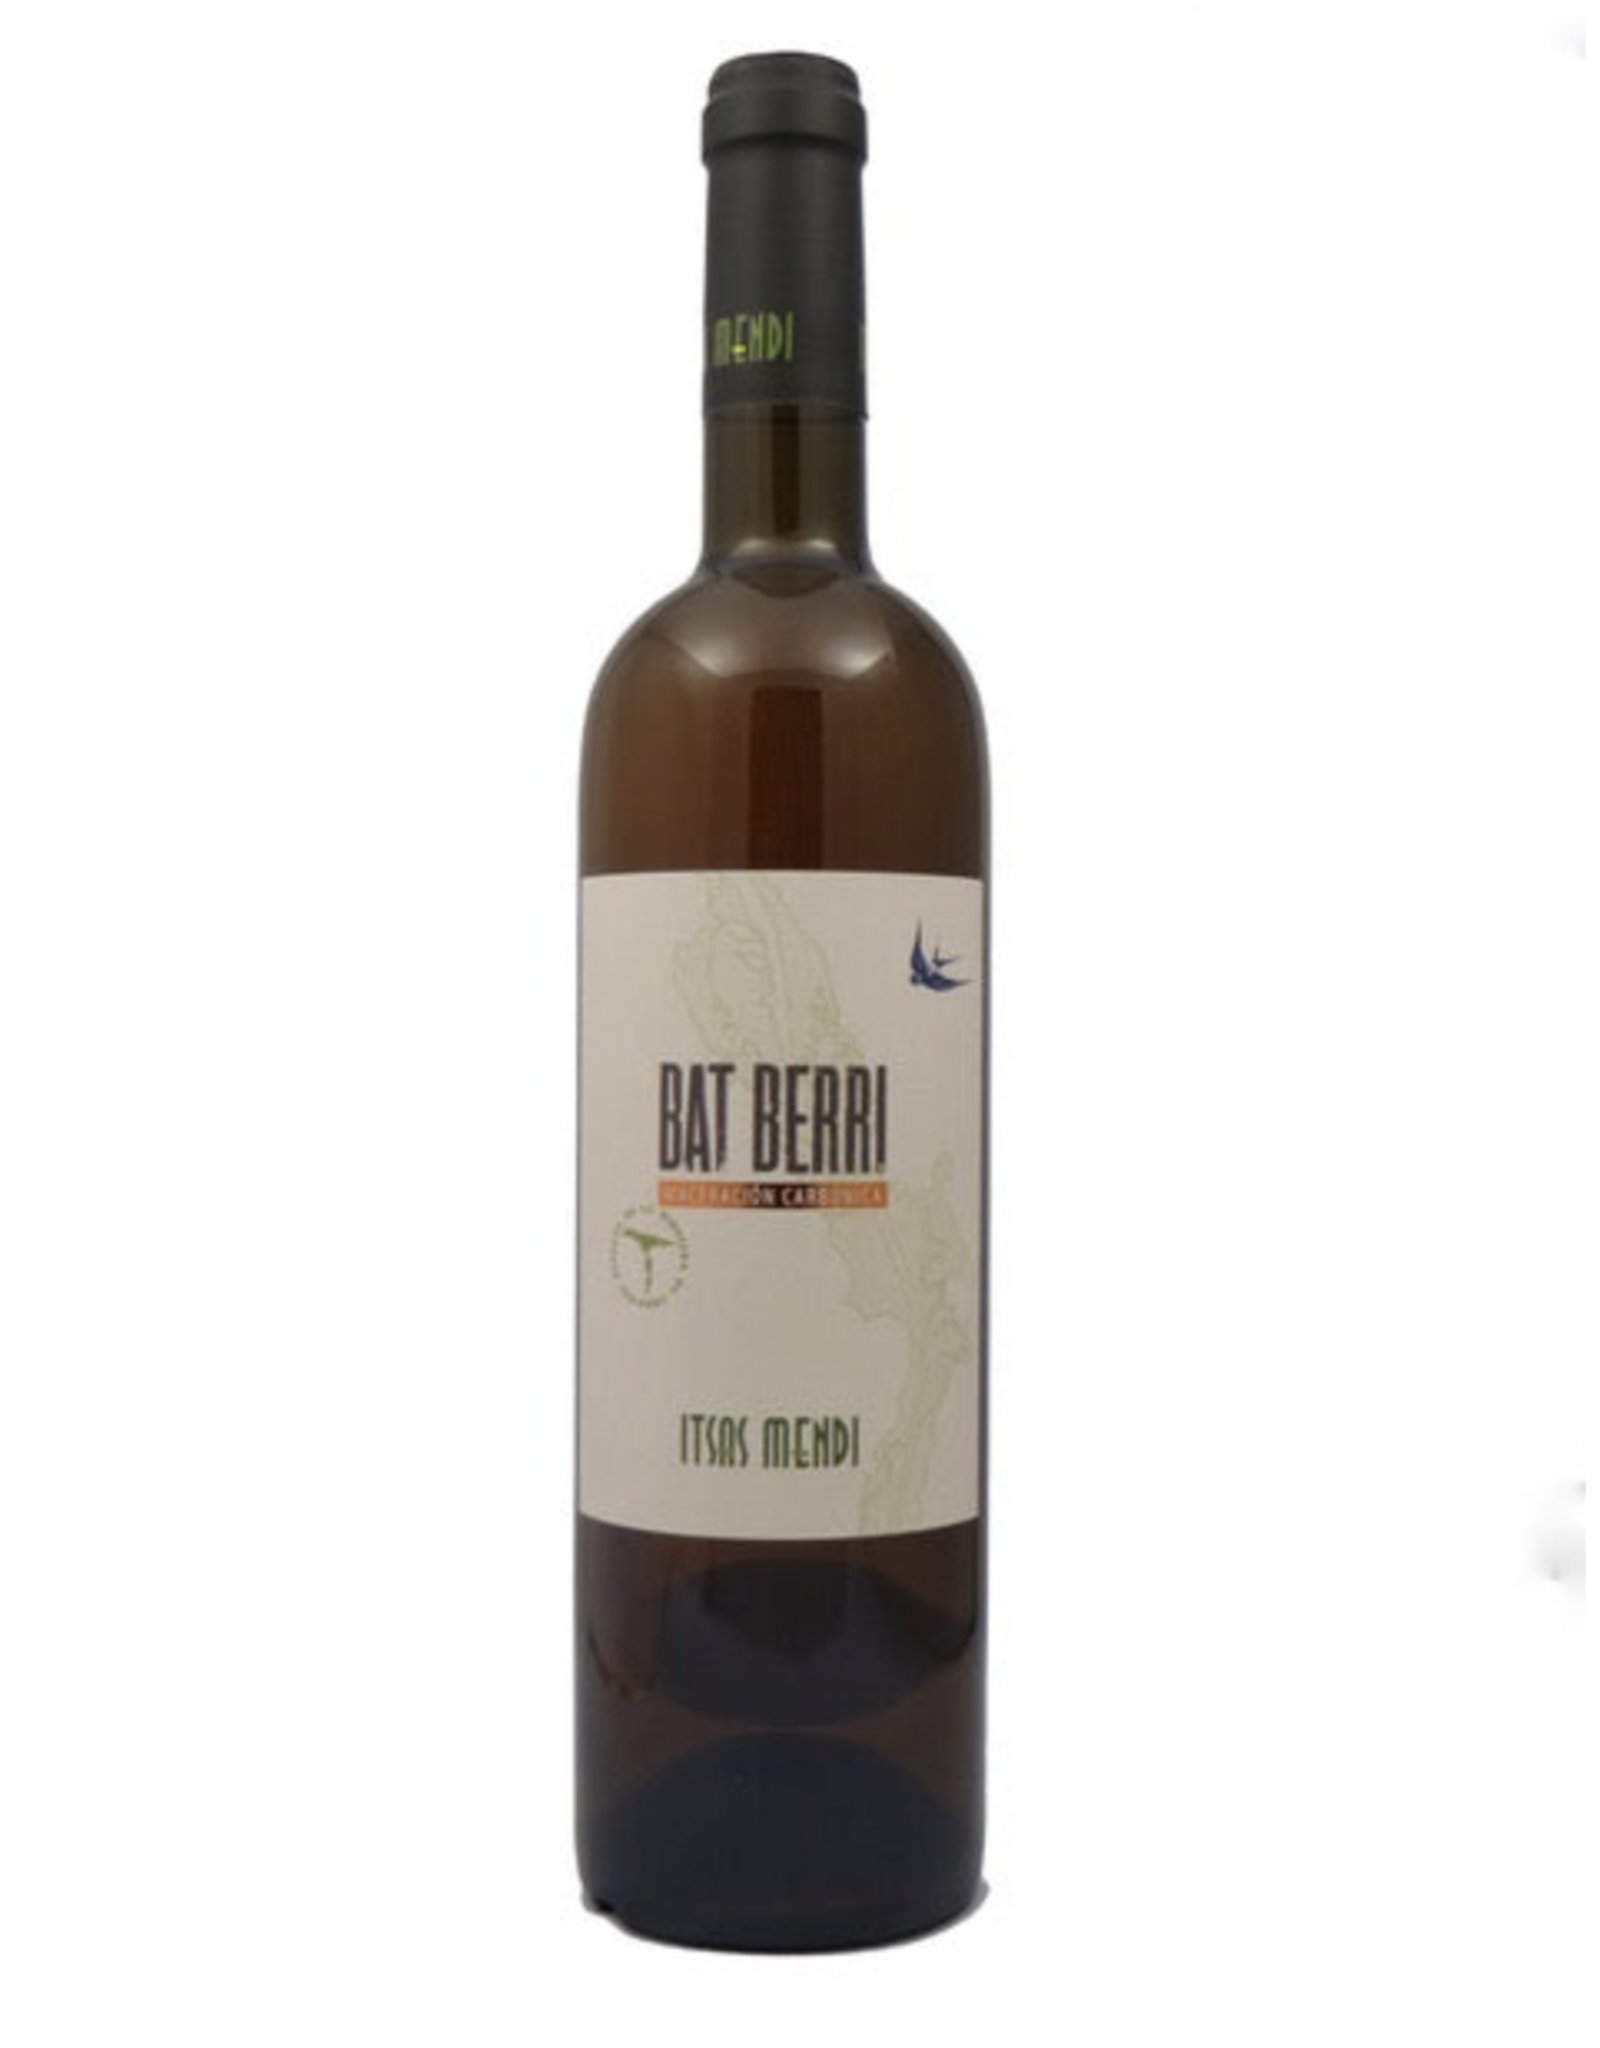 Itsas Mendi Bat Berri 2021 Orange Wine